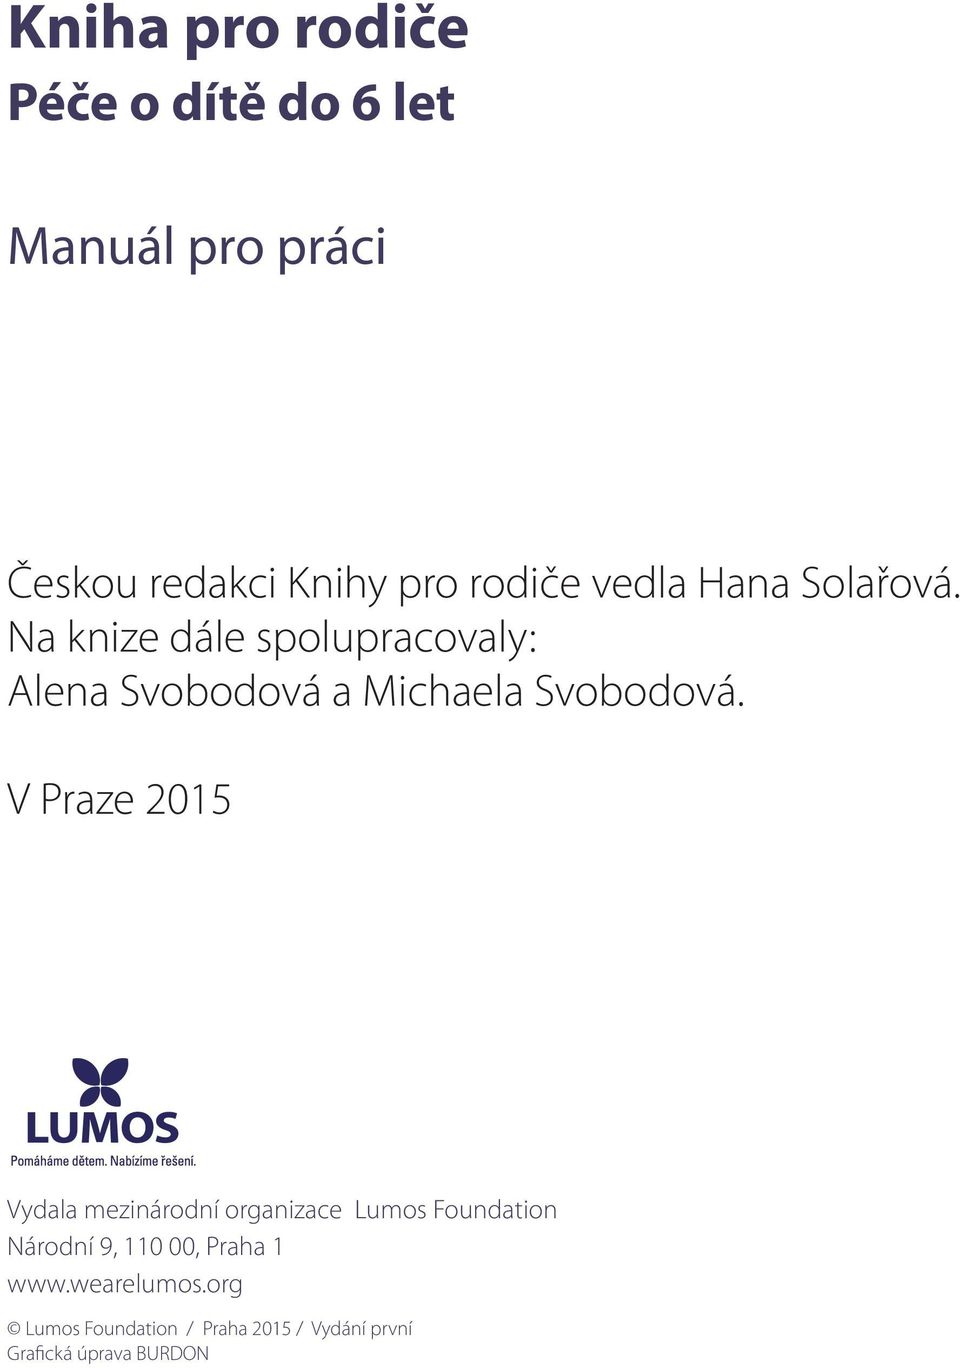 V Praze 2015 Vydala mezinárodní organizace Lumos Foundation Národní 9, 110 00, Praha 1